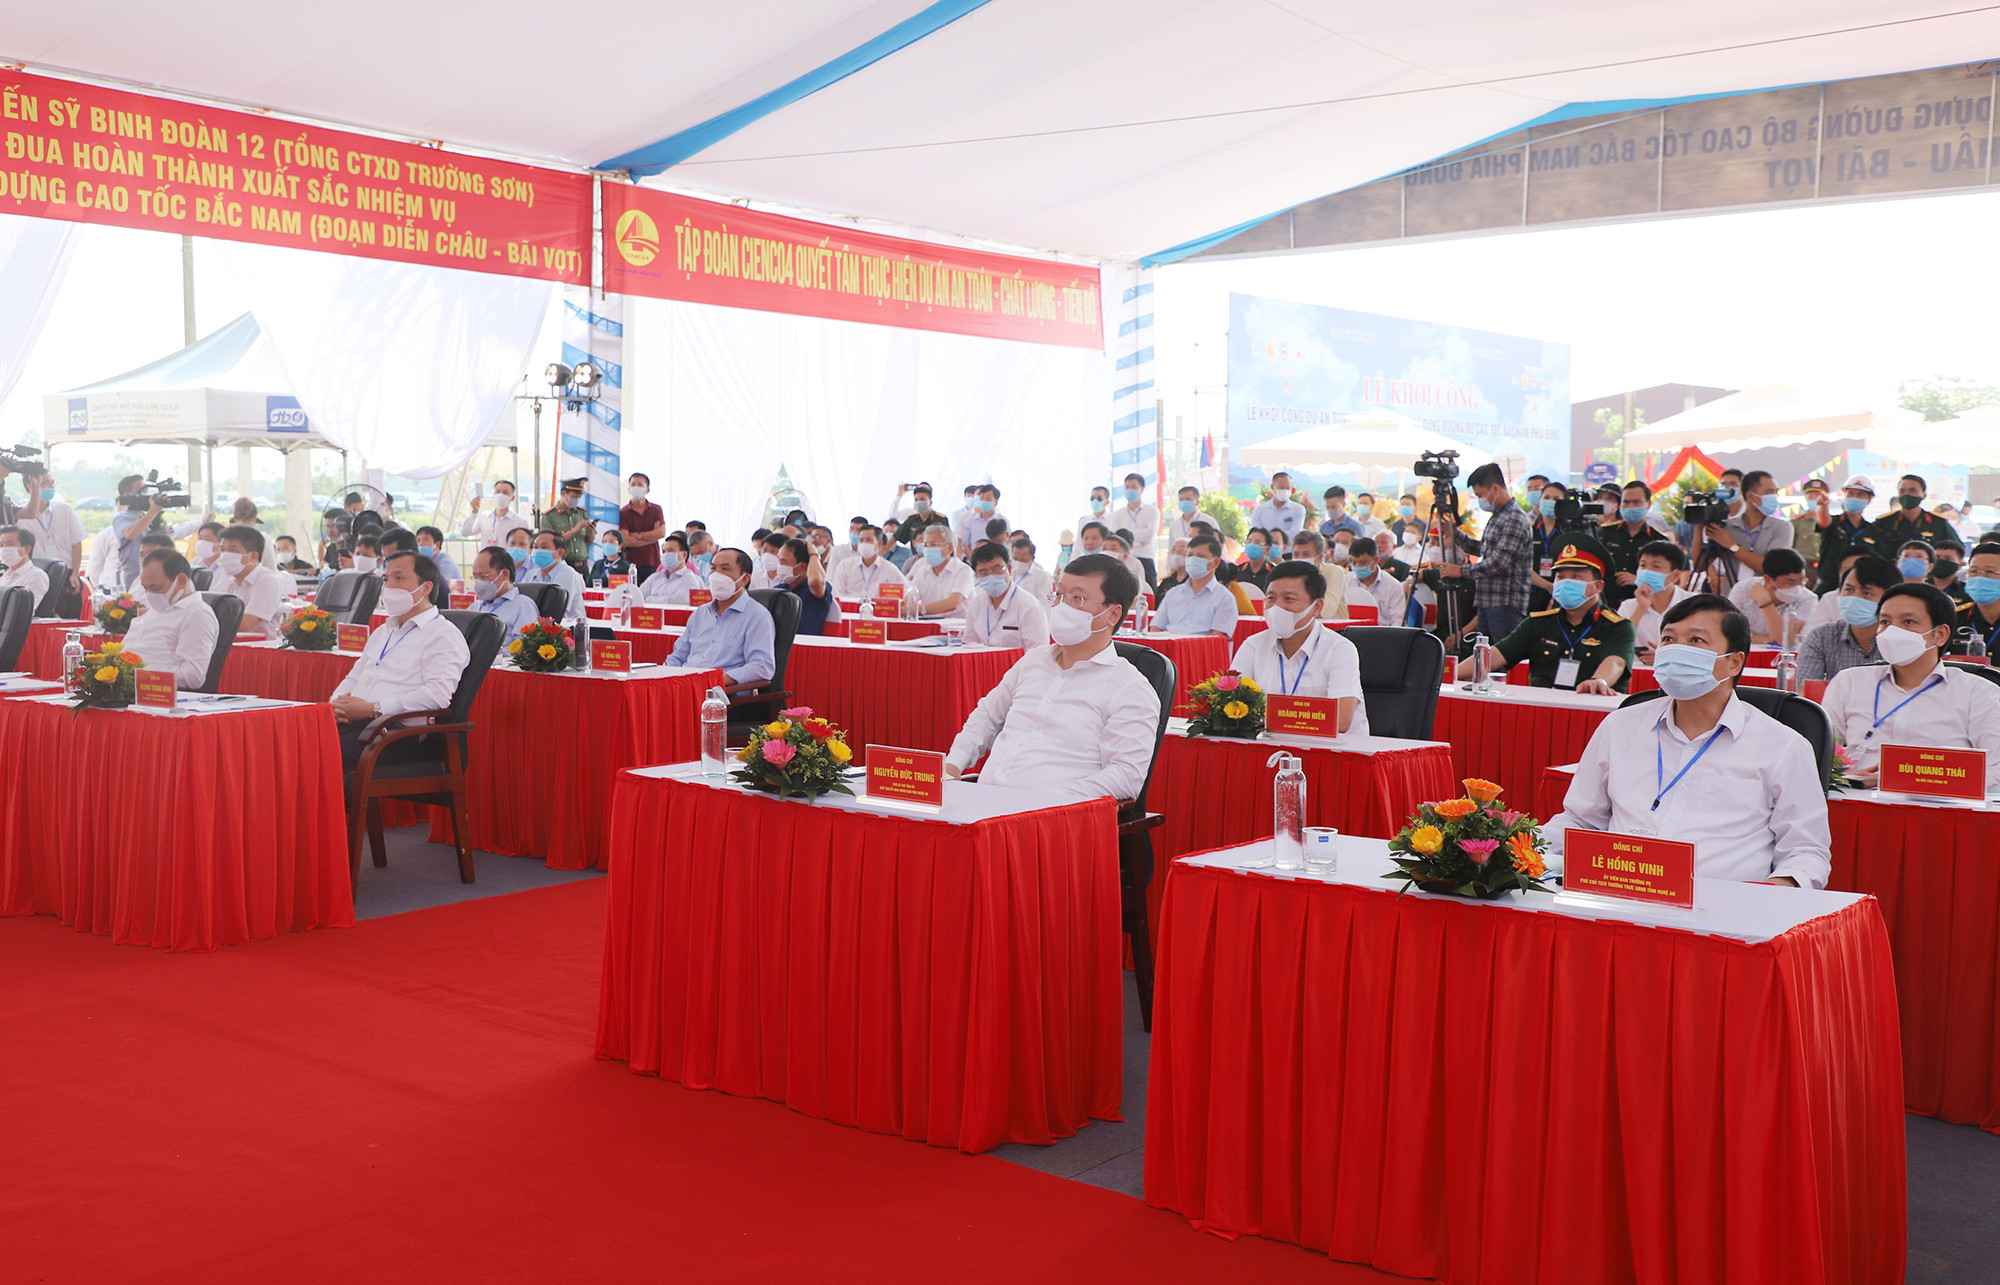 Các đồng chí lãnh đạo Bộ GTVT, tỉnh Nghệ An, tỉnh Hà Tĩnh tham dự lễ khởi công. Ảnh: Phạm Bằng